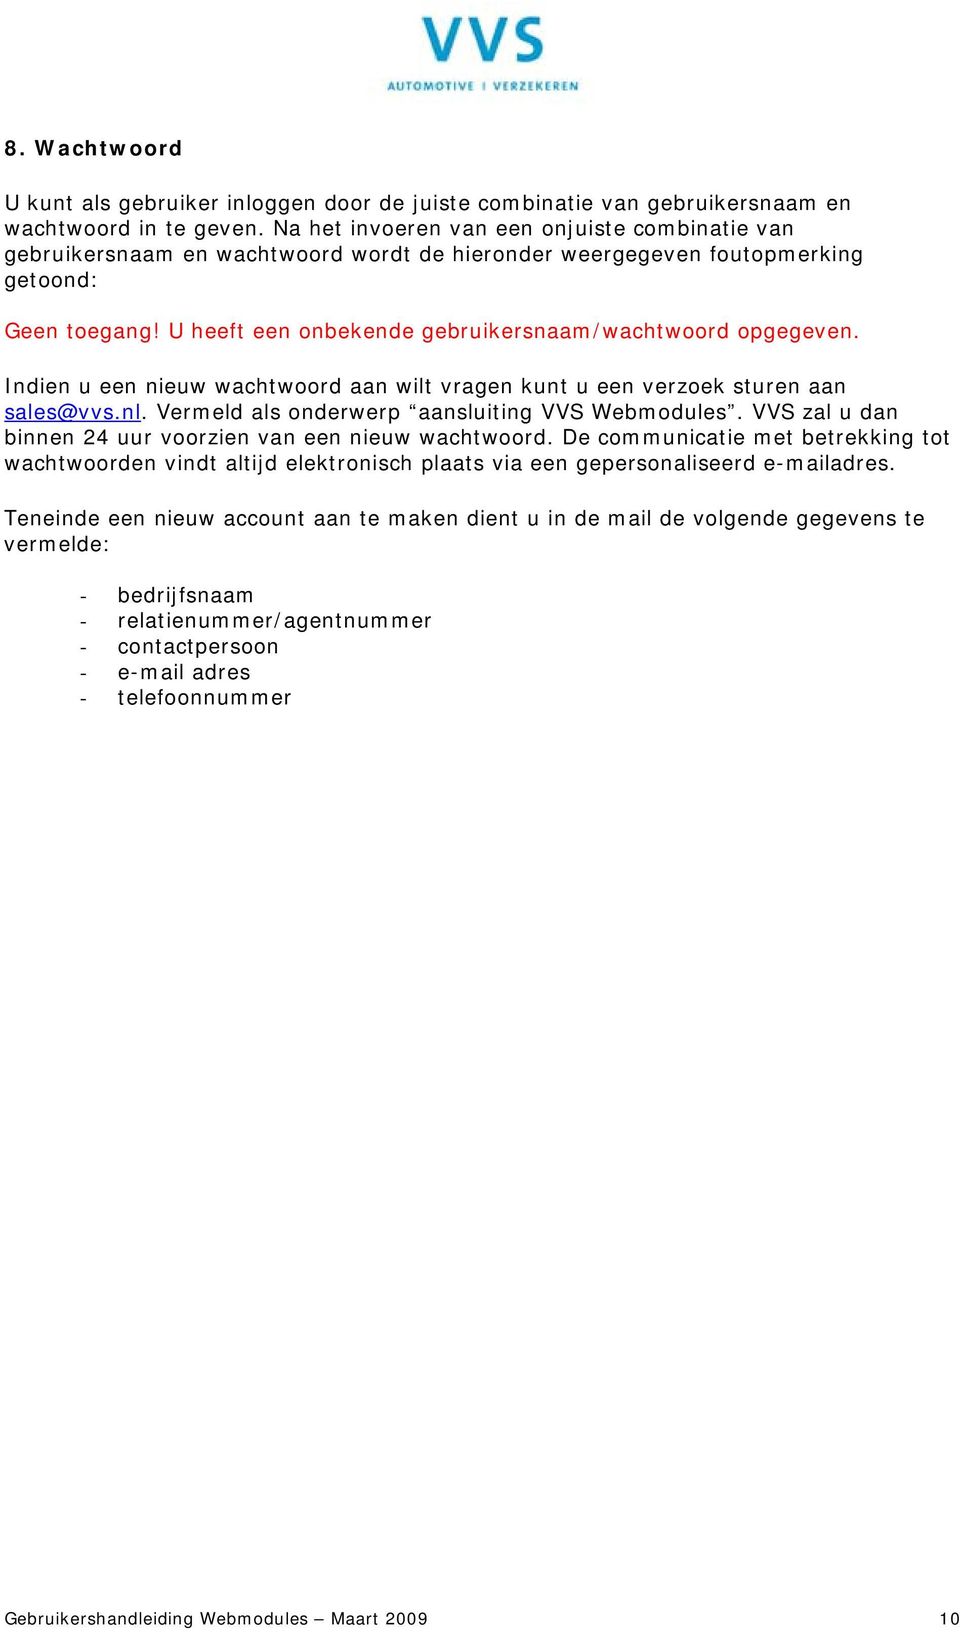 U heeft een onbekende gebruikersnaam/wachtwoord opgegeven. Indien u een nieuw wachtwoord aan wilt vragen kunt u een verzoek sturen aan sales@vvs.nl. Vermeld als onderwerp aansluiting VVS Webmodules.